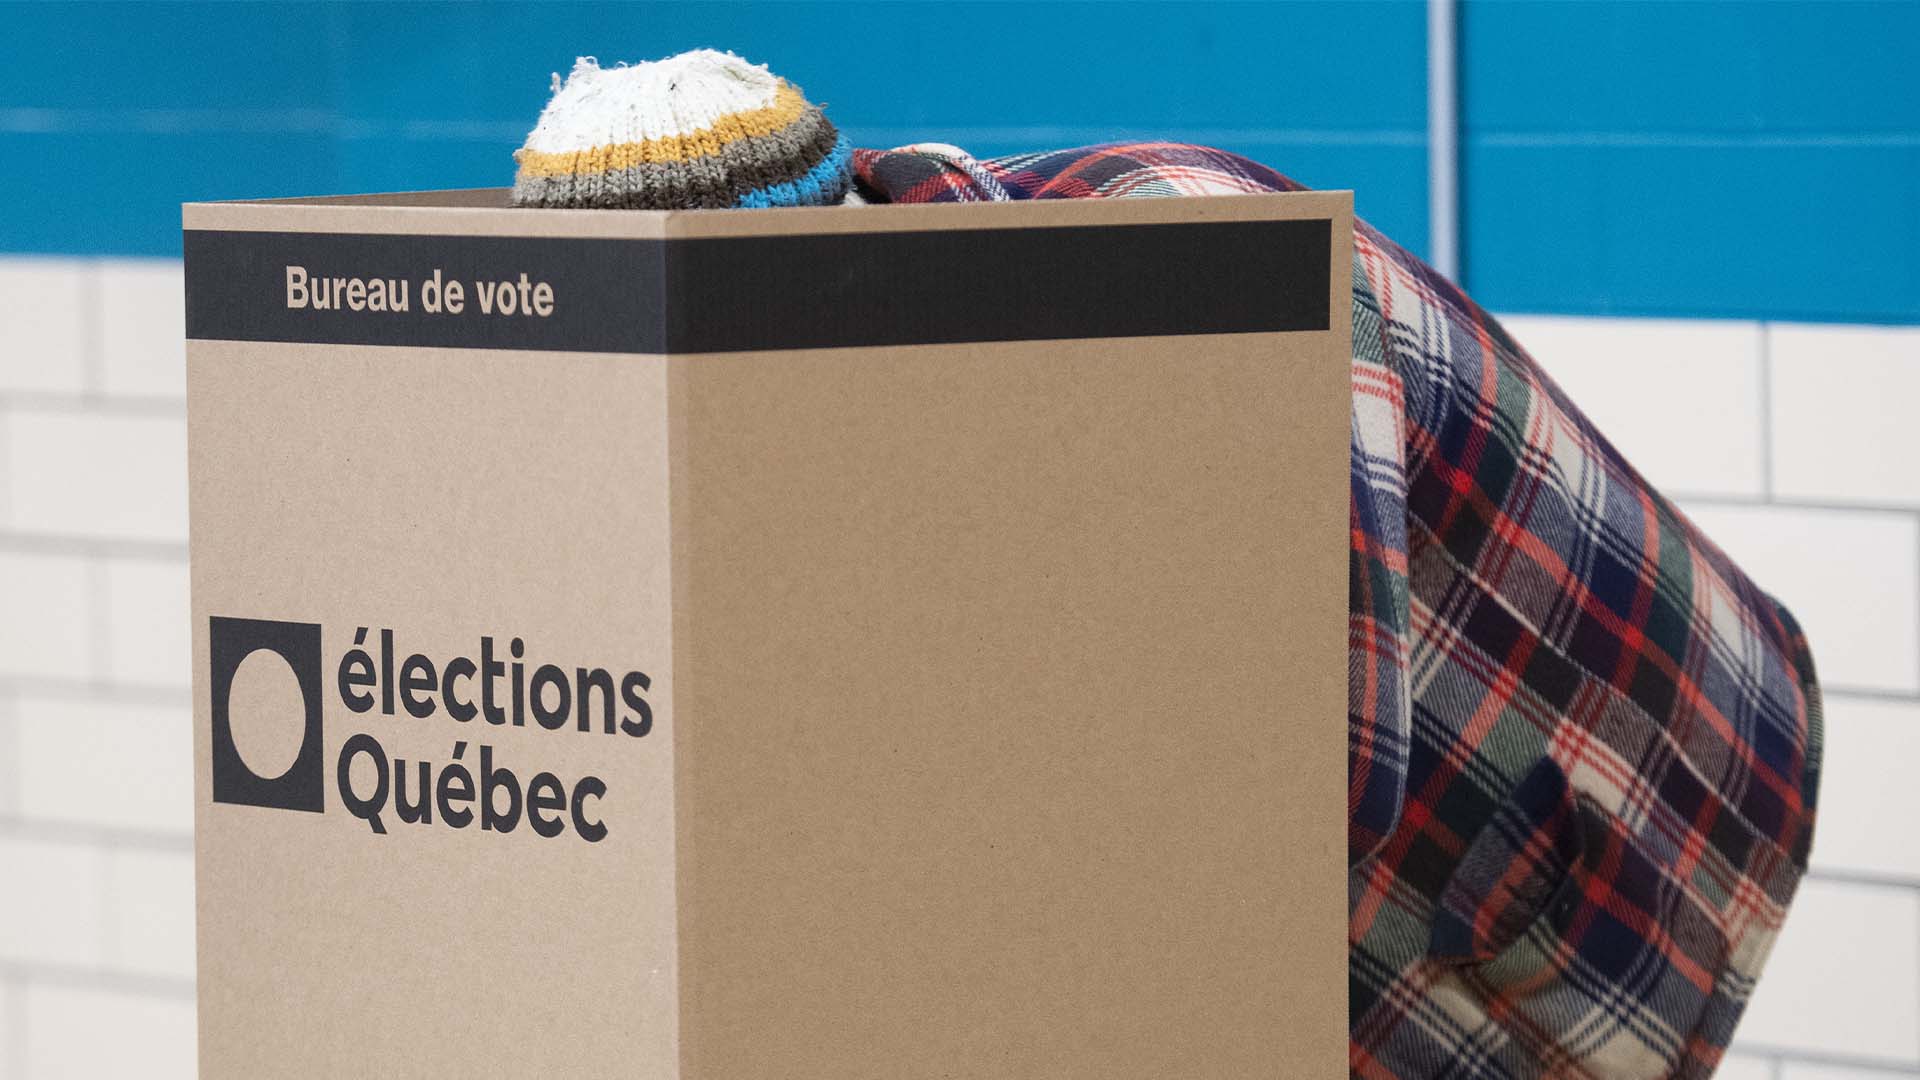 Les bureaux de vote sont accessibles de 9 heures 30 à 20 heures en ce jour d'élections au Québec.